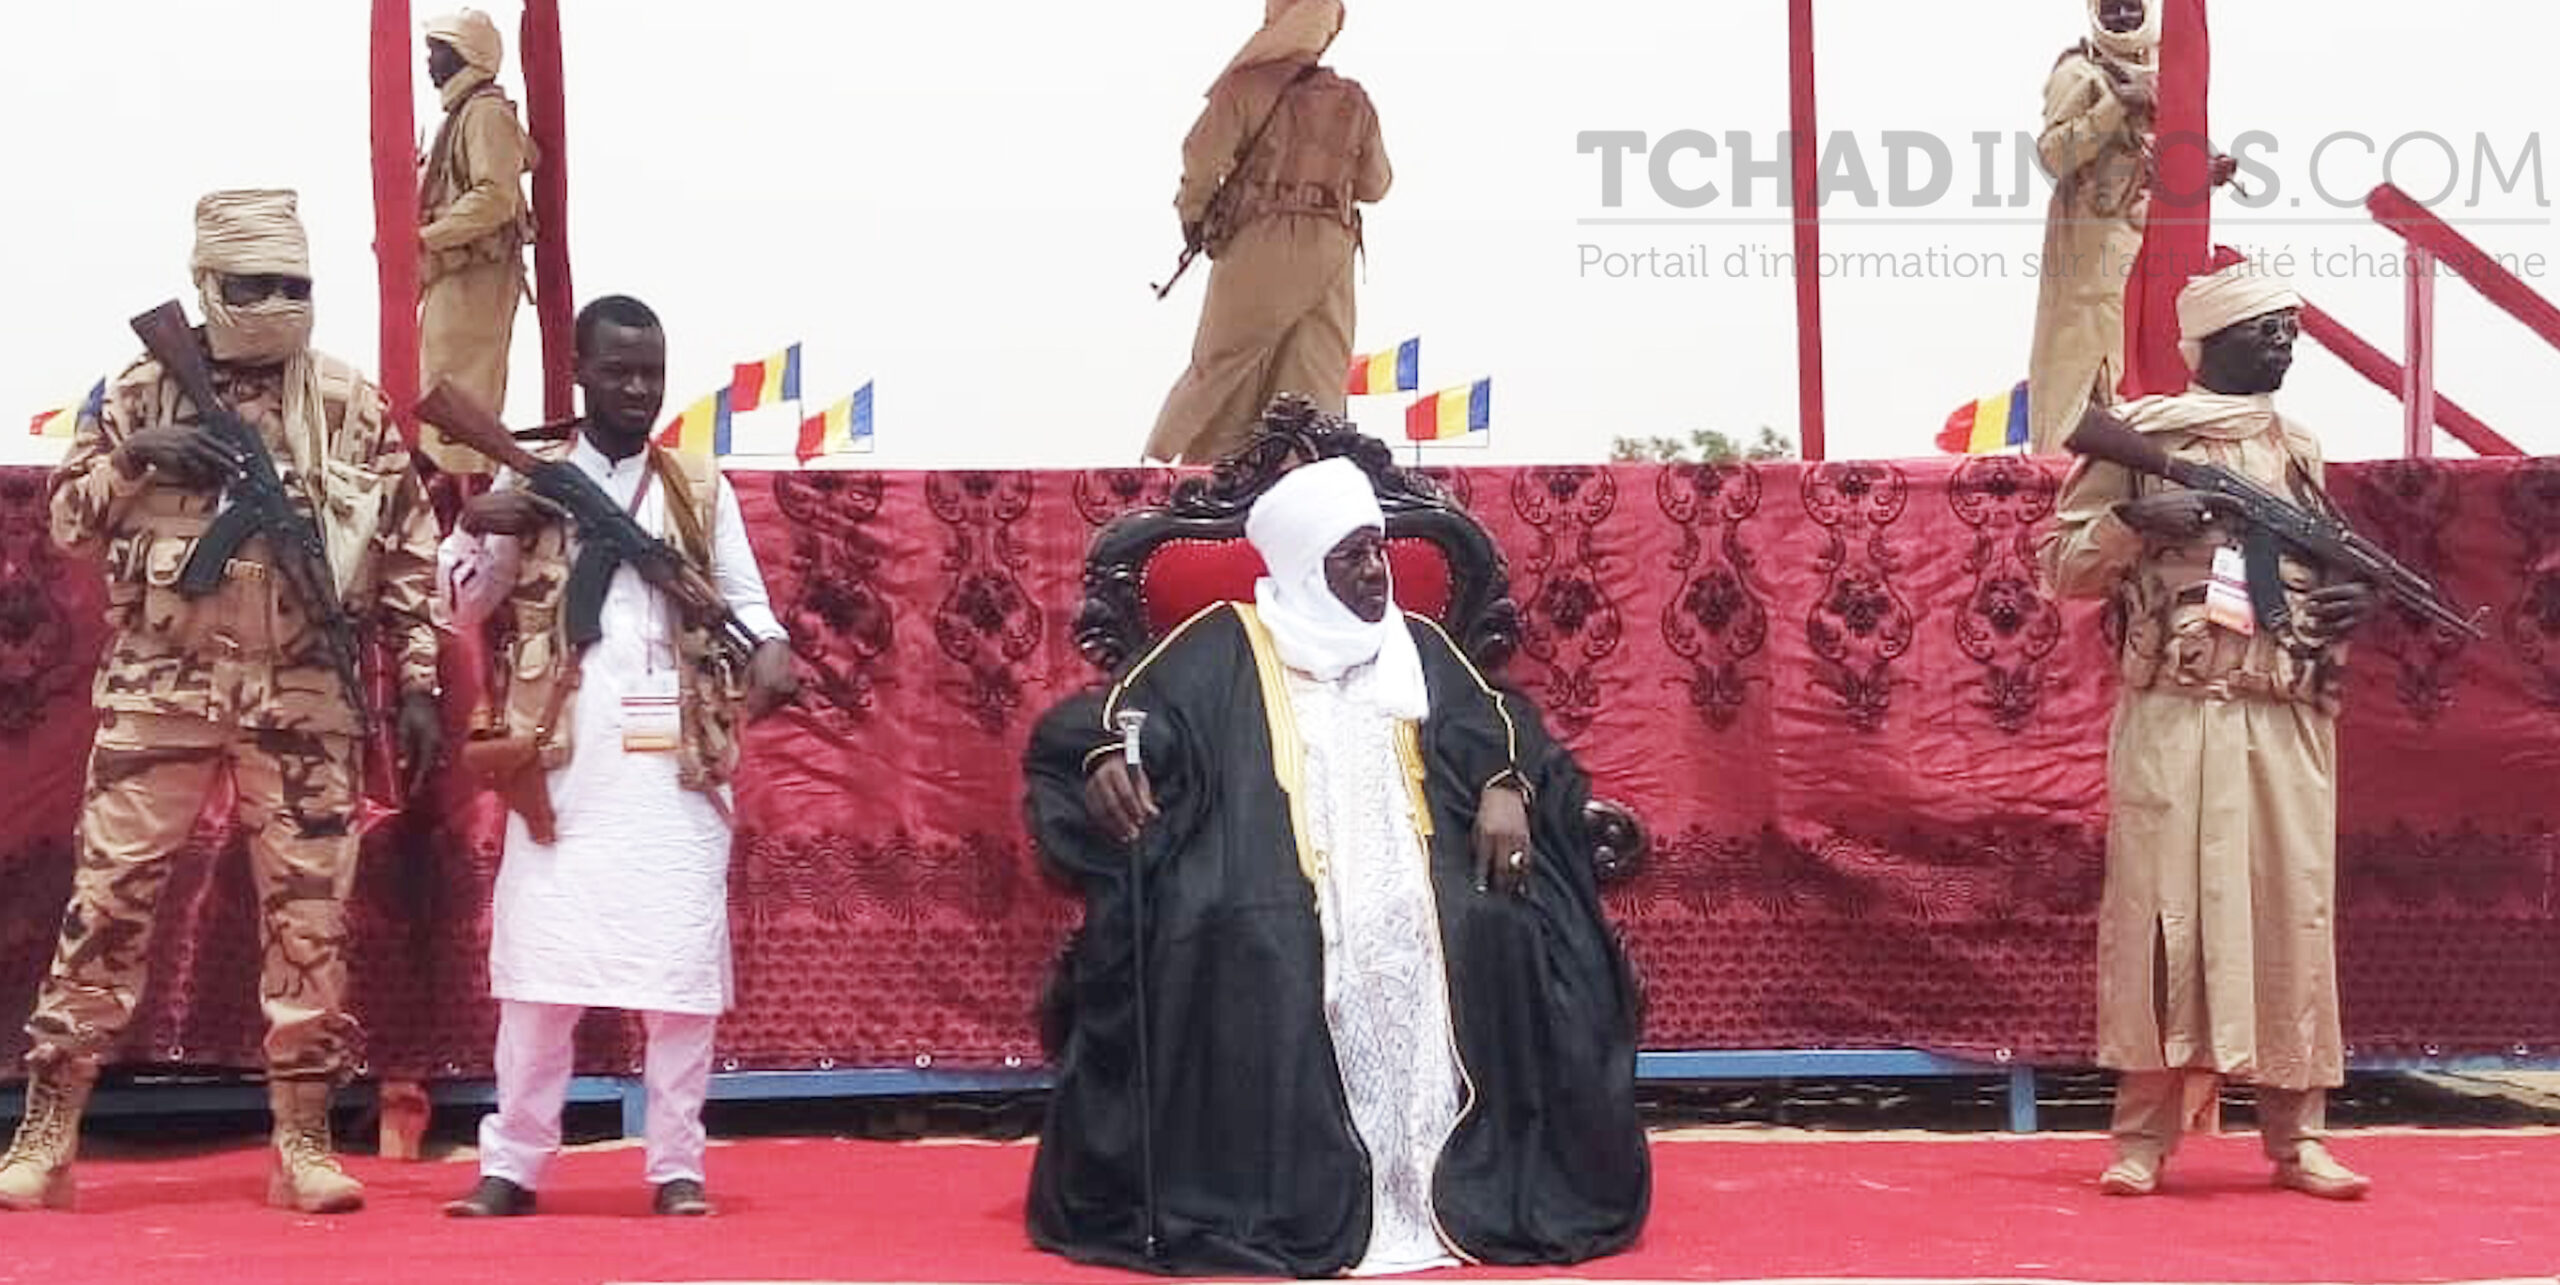 Tchad : les cérémonies d’installation officielle des autorités traditionnelles sont interdites